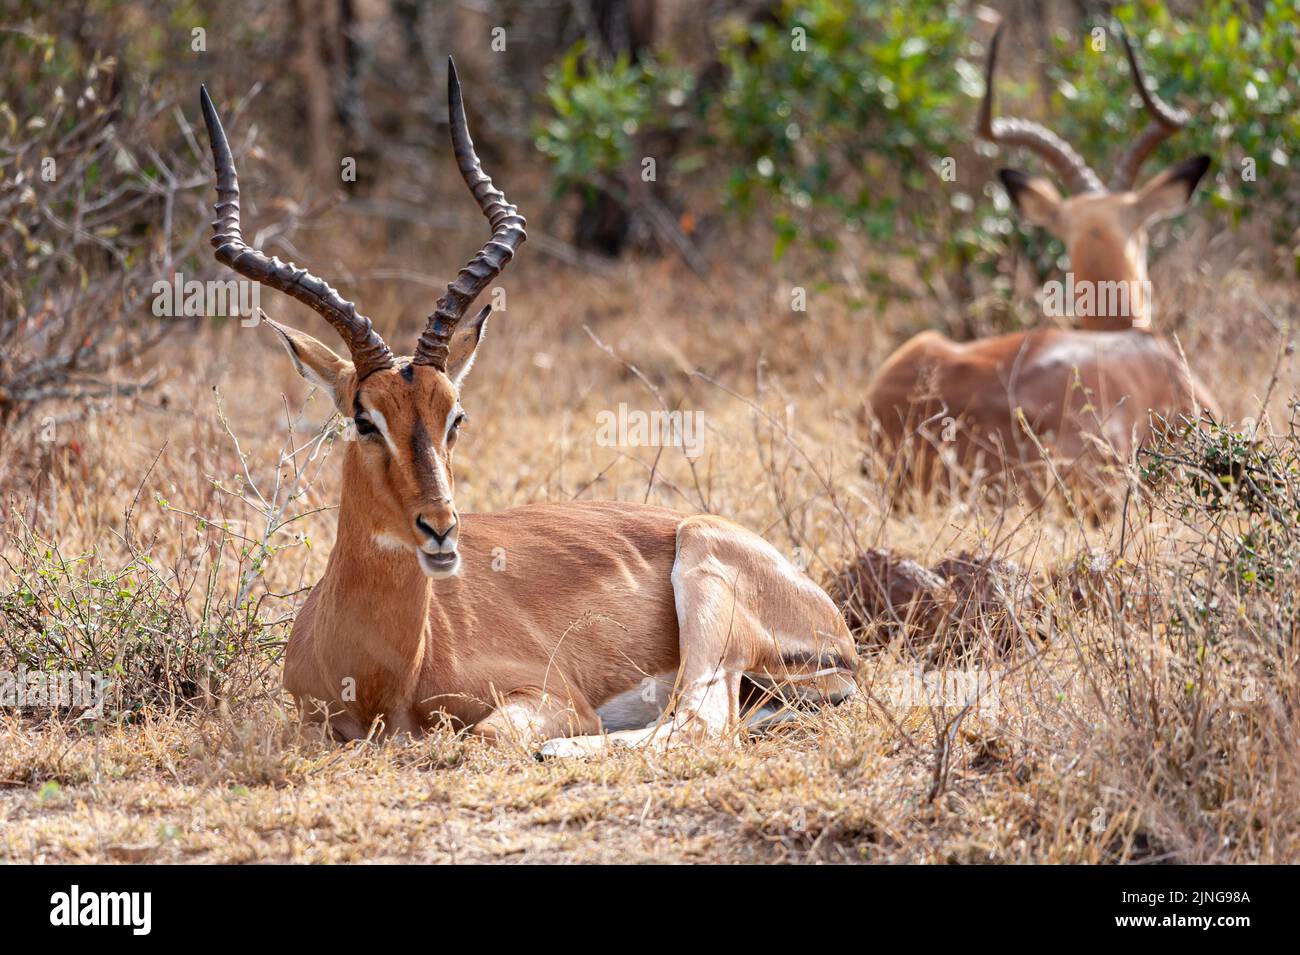 Dos impalas en su hábitat silvestre, Sudáfrica, observación de vida silvestre Foto de stock